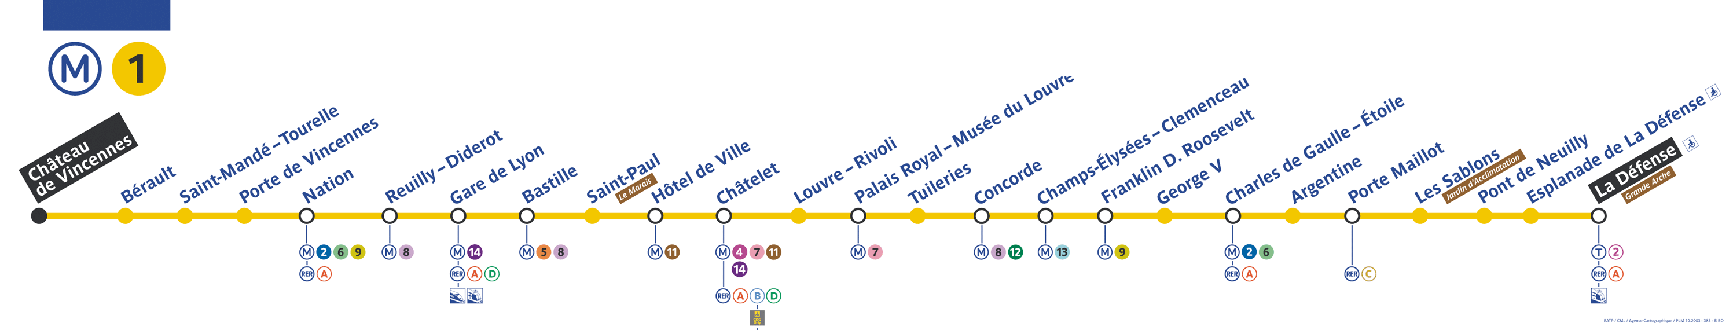 Plan ligne 1 métro de Paris